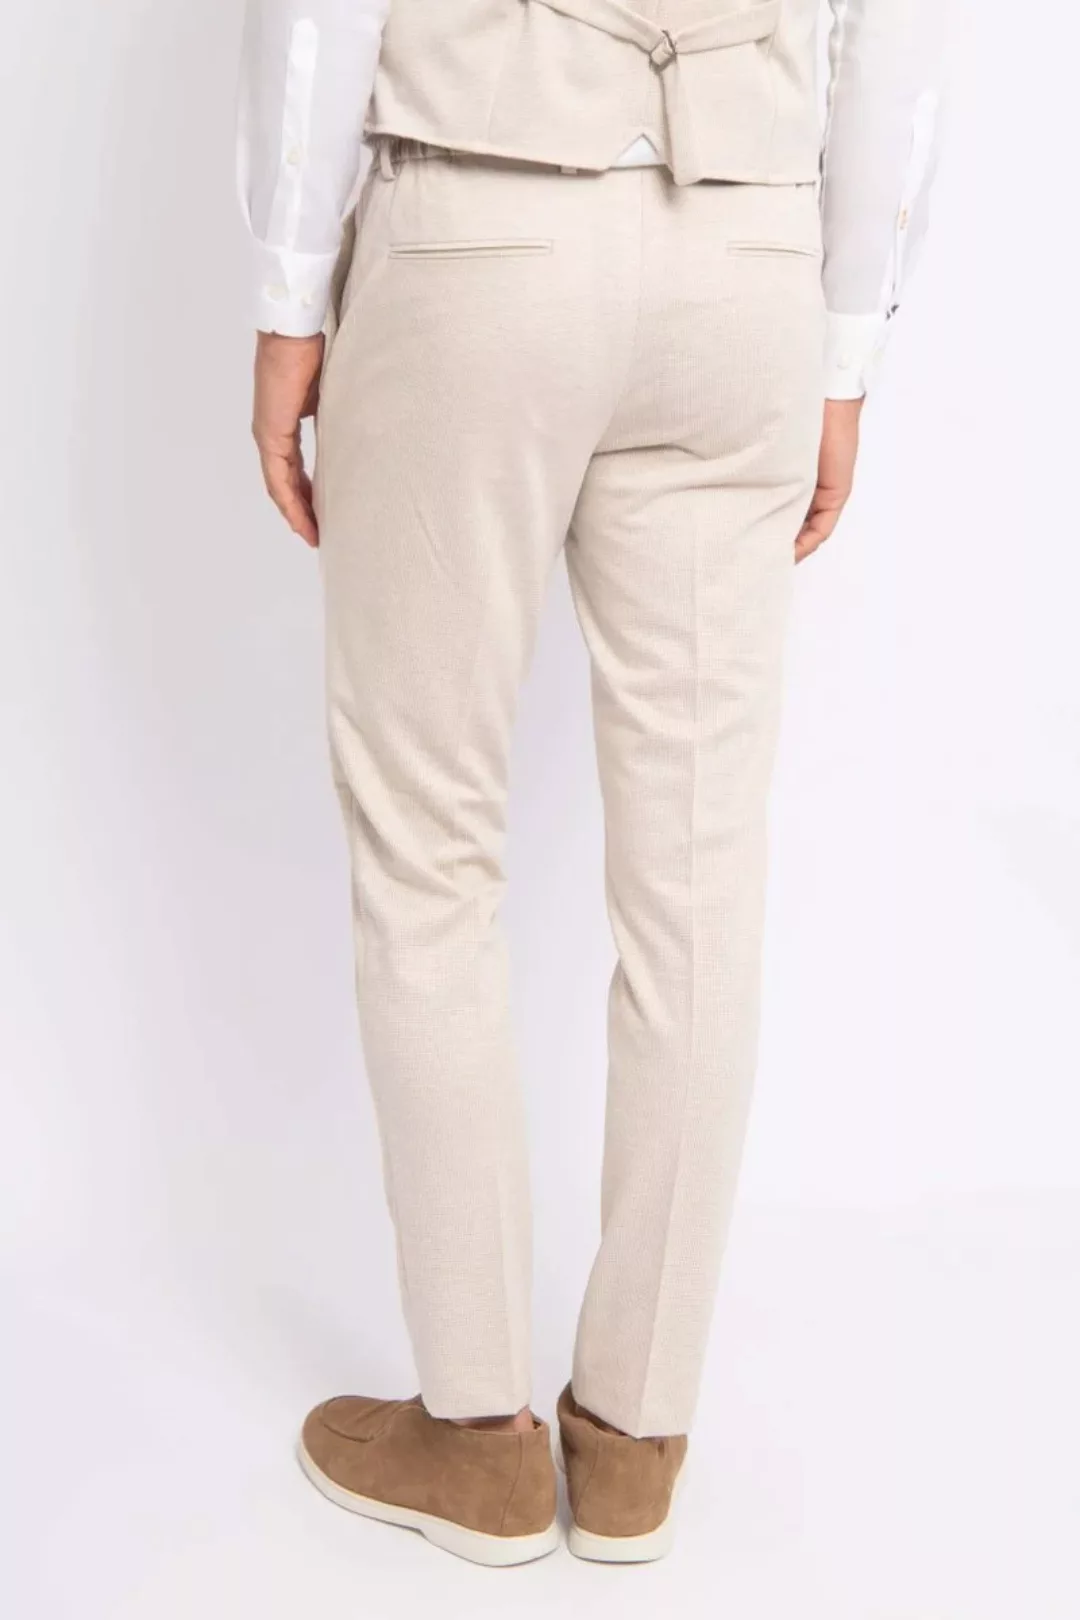 Suitable Dace Jersey Pantalon Beige - Größe 48 günstig online kaufen